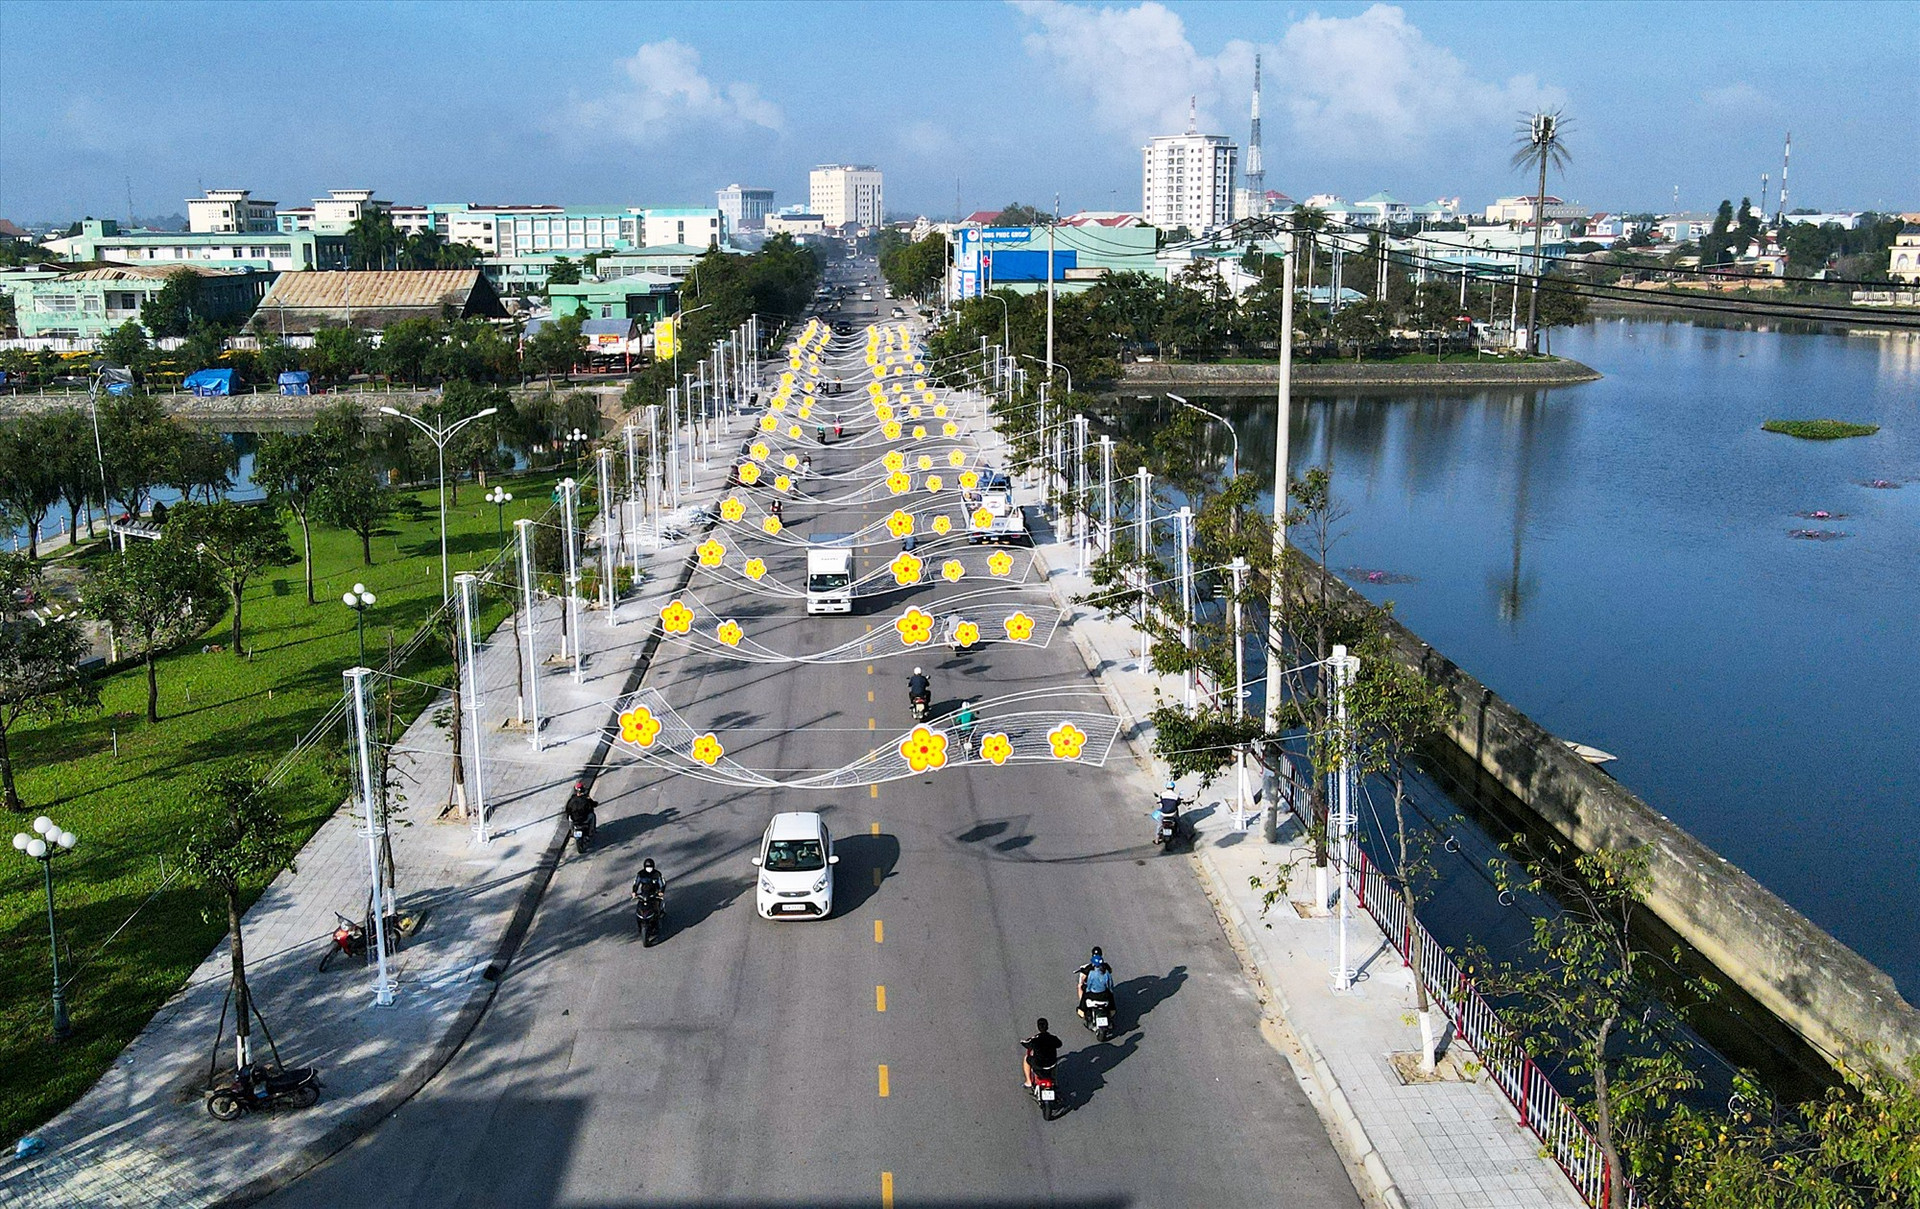 Hệ thống led chiếu sáng sắp được hoàn thiện tại khu vực bờ hồ Nguyễn Du.